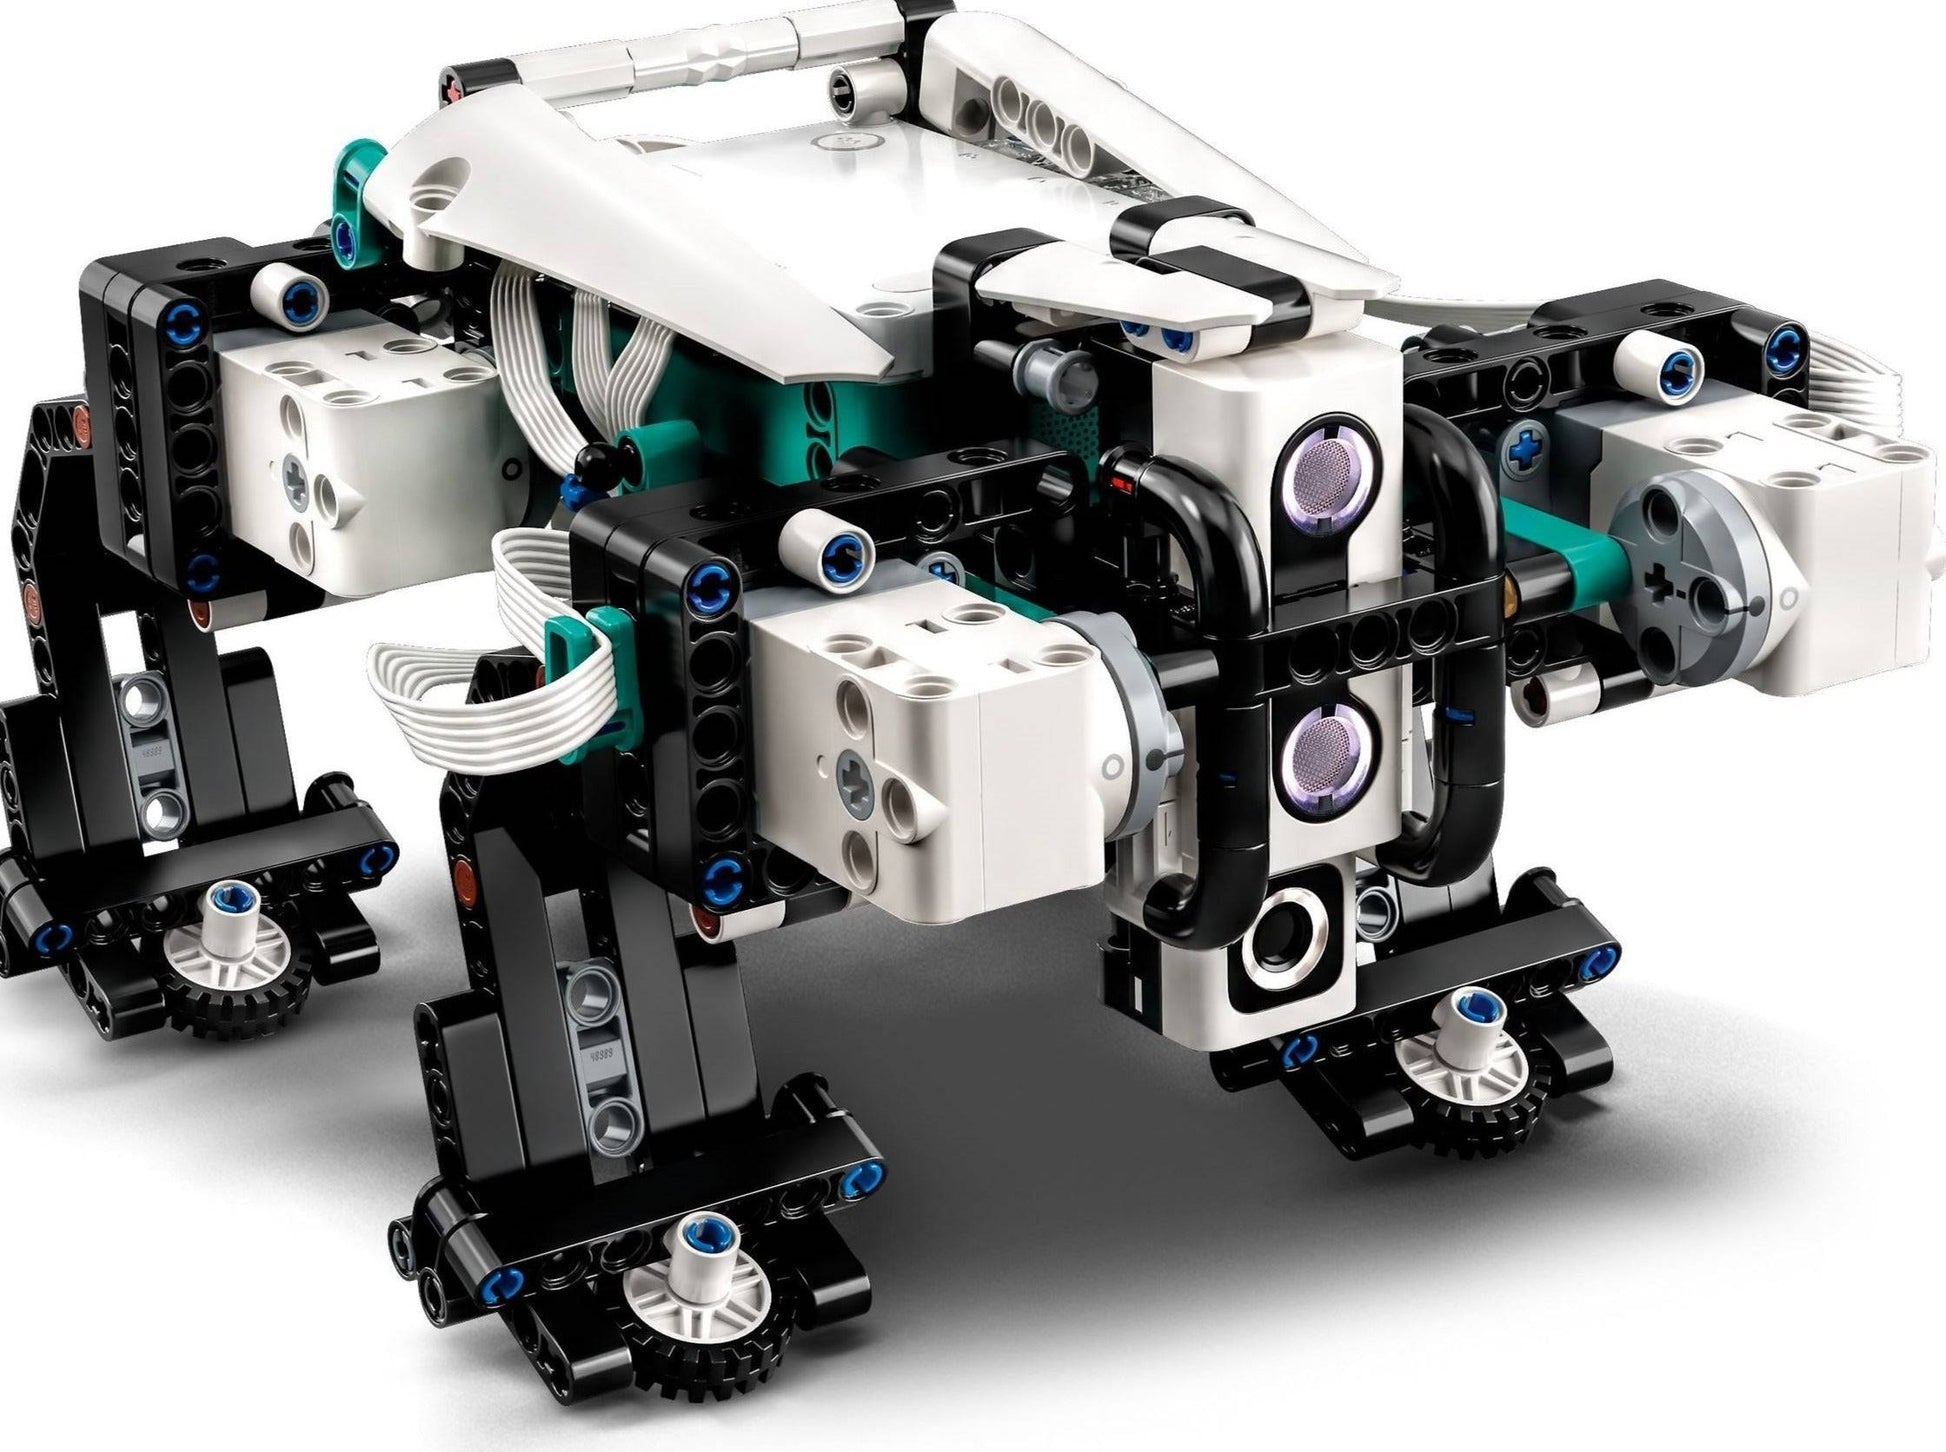 51515 : Robot Uitvinder - Brickset for You Huur Lego Kortrijk (West-Vlaanderen)